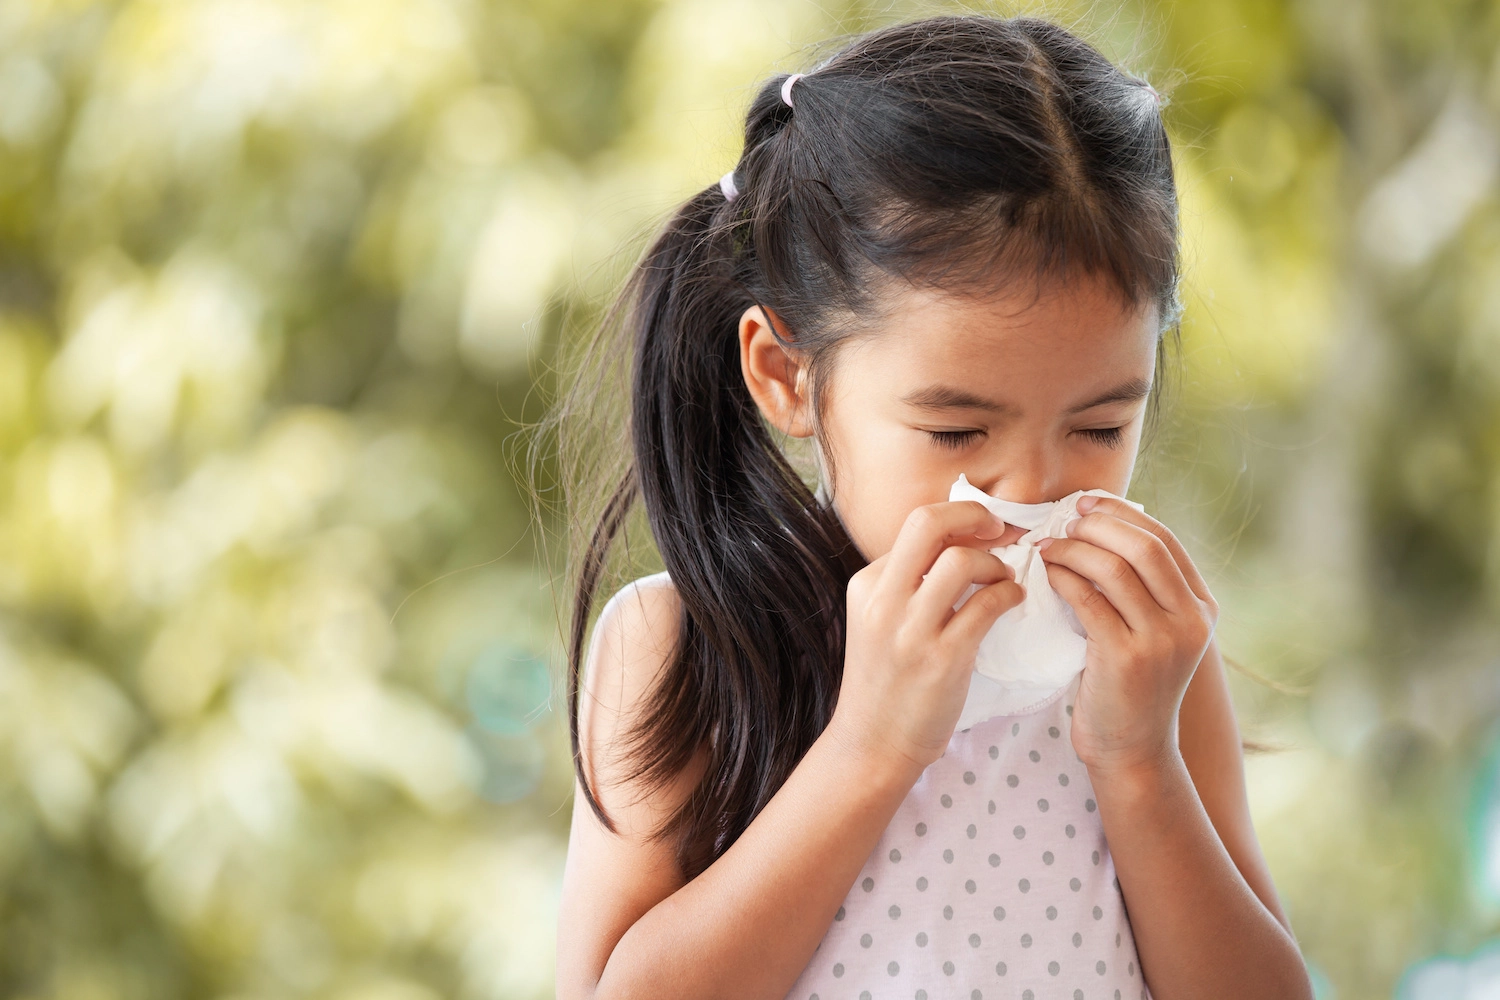 Understanding the Symptoms of Spring Allergies in Children